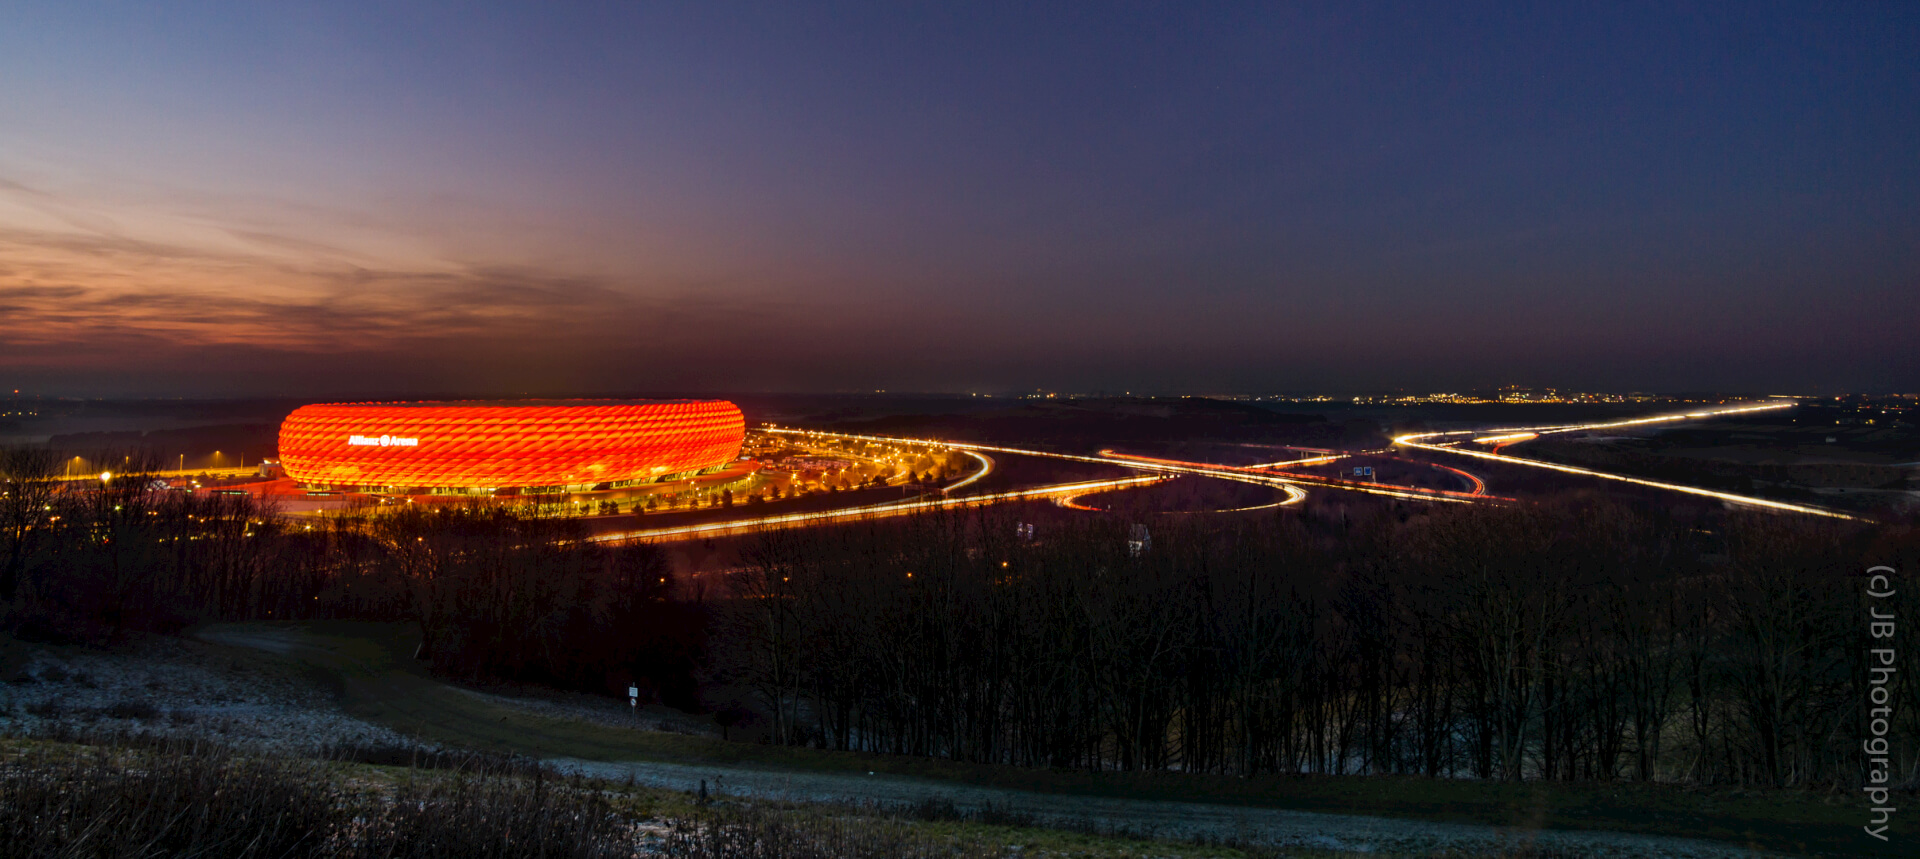 Allianz Arena mit Autobahn